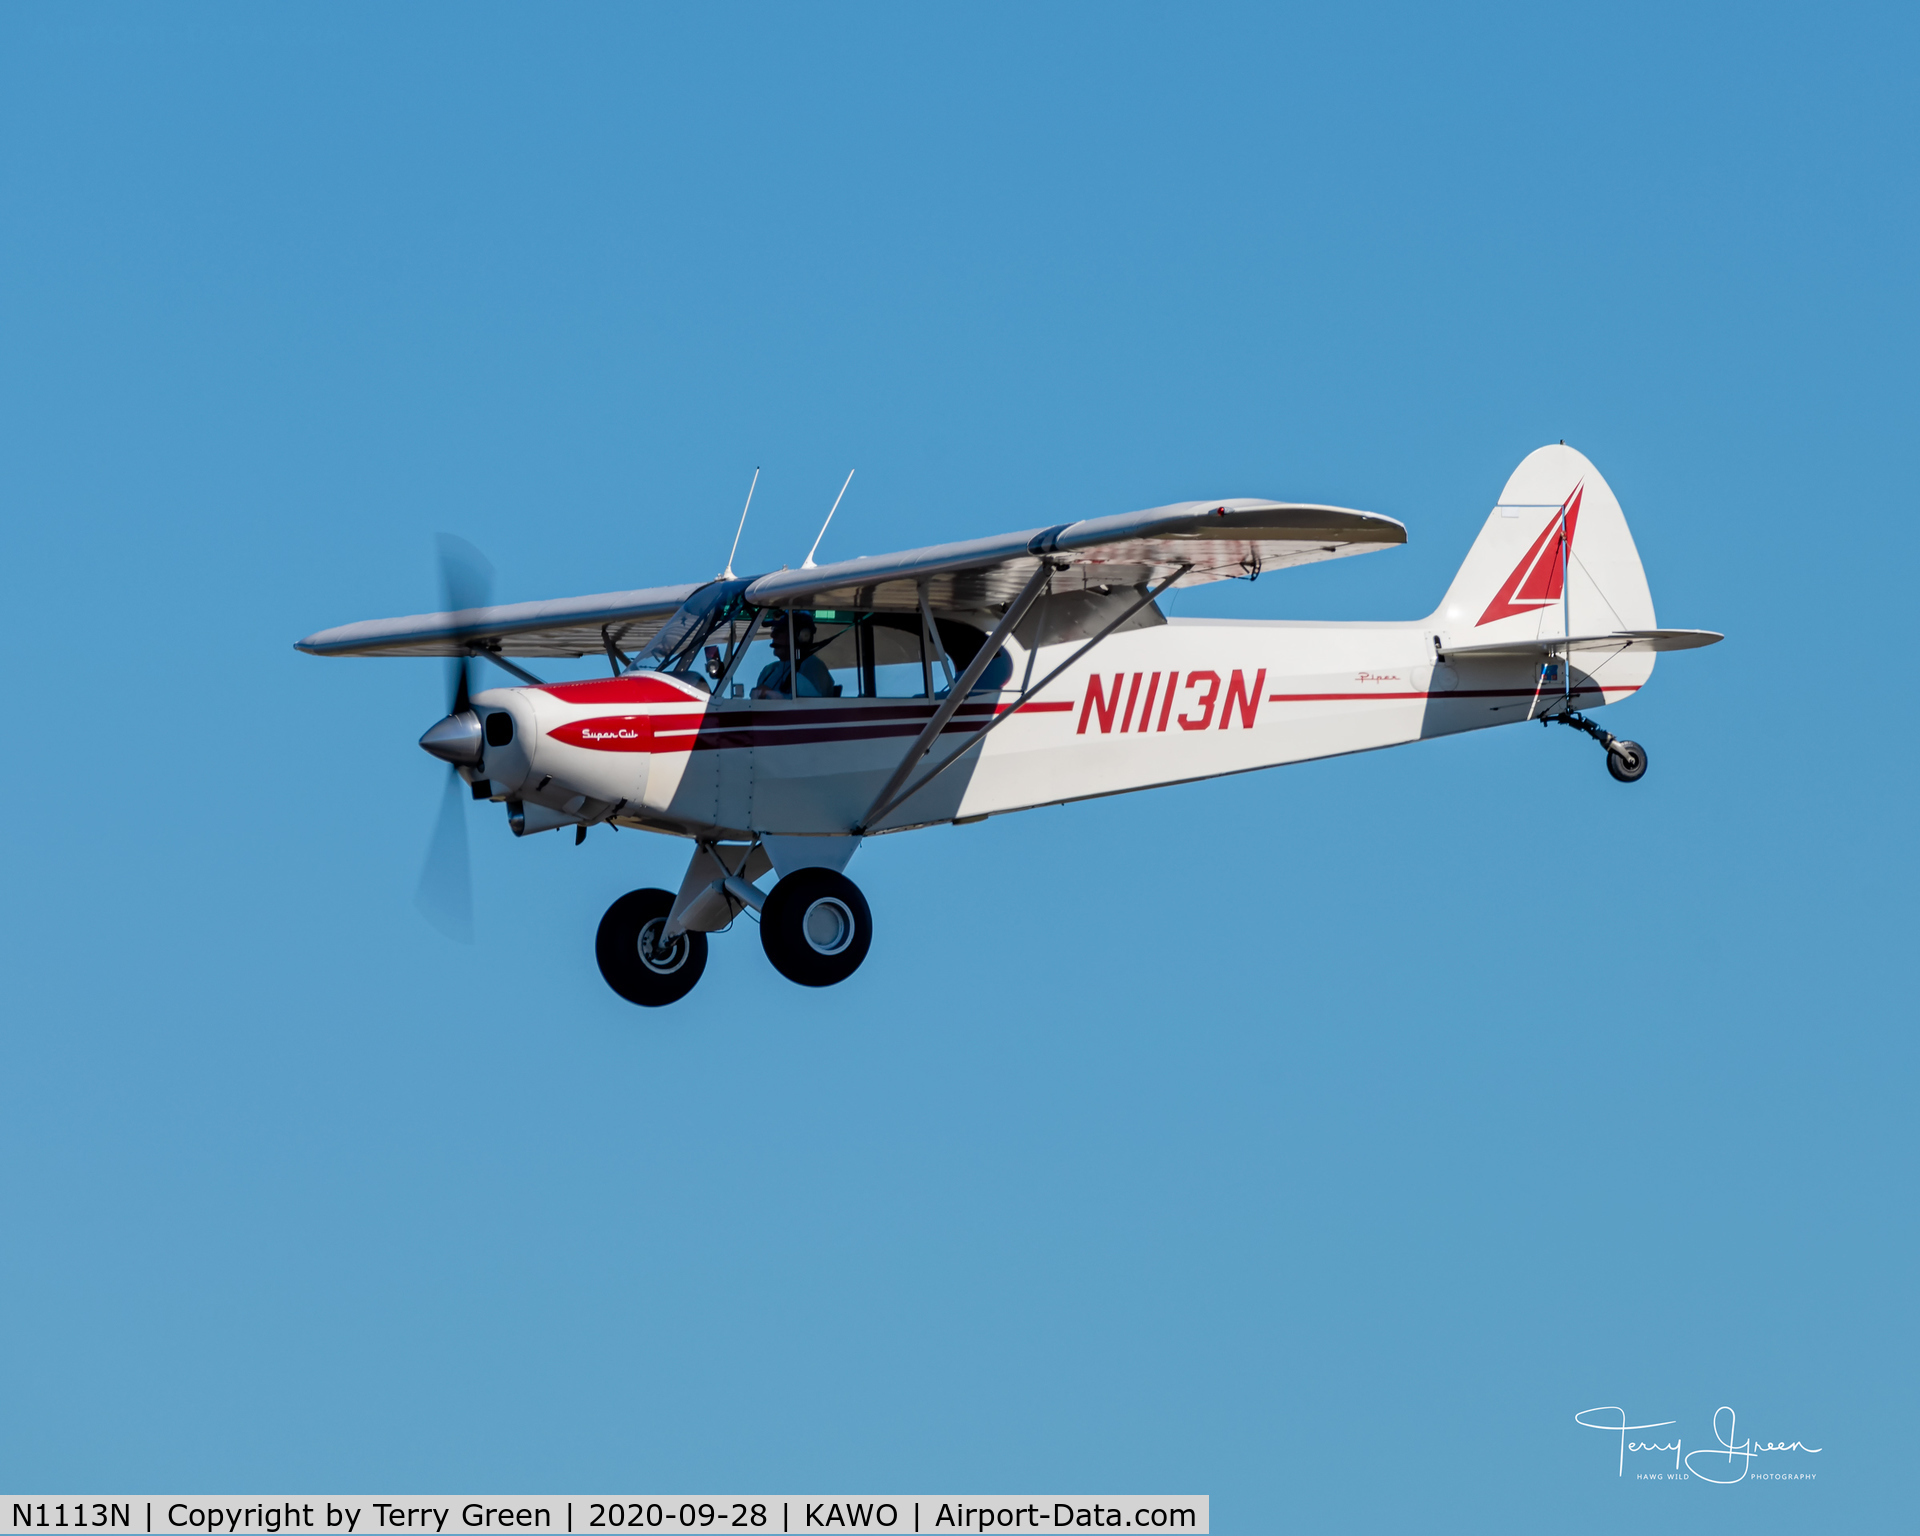 N1113N, 1975 Piper PA-18-150 Super Cub C/N 18-7509033, KAWO